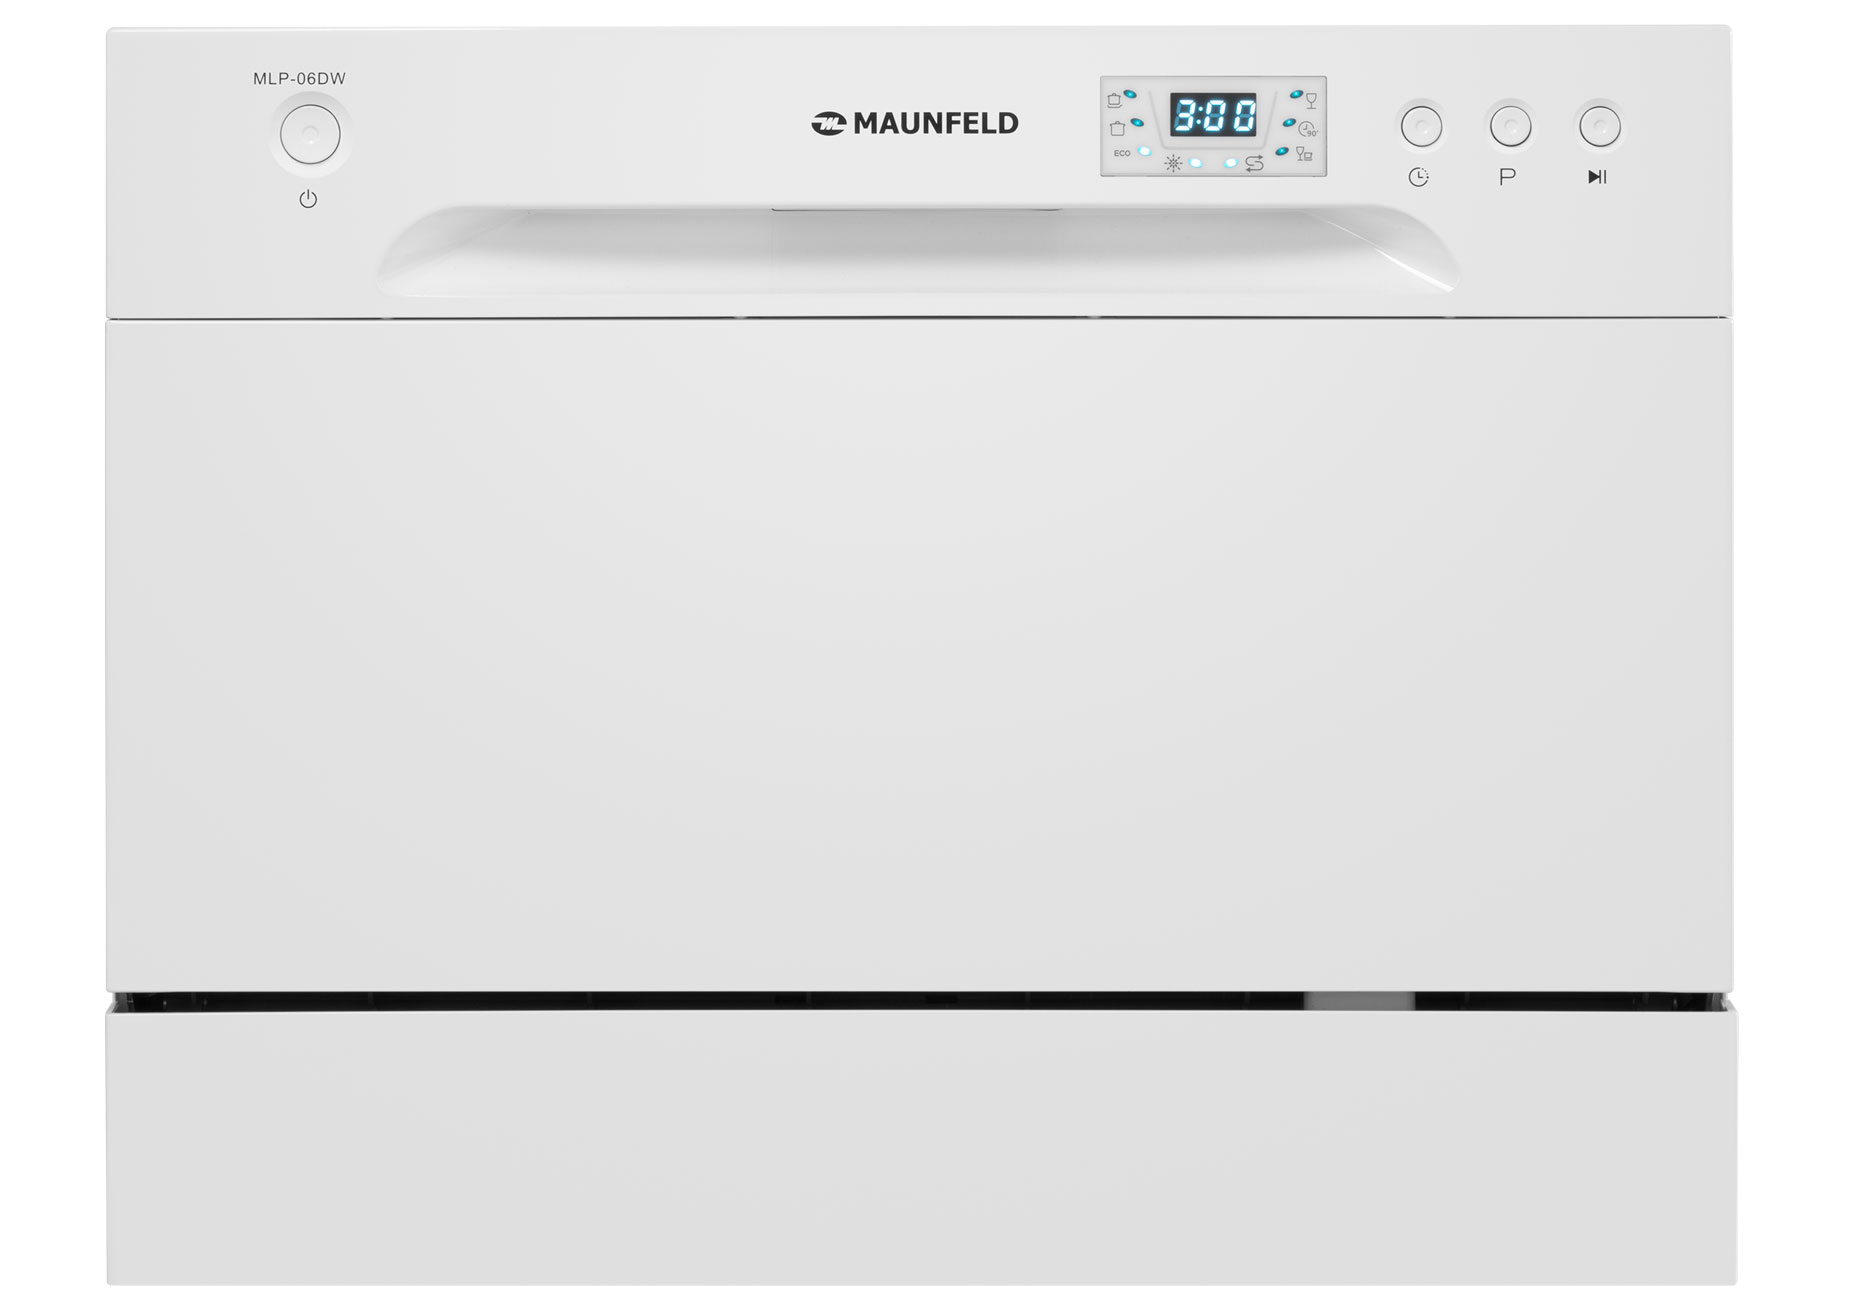 Посудомоечная машина MAUNFELD MLP-06DW белый